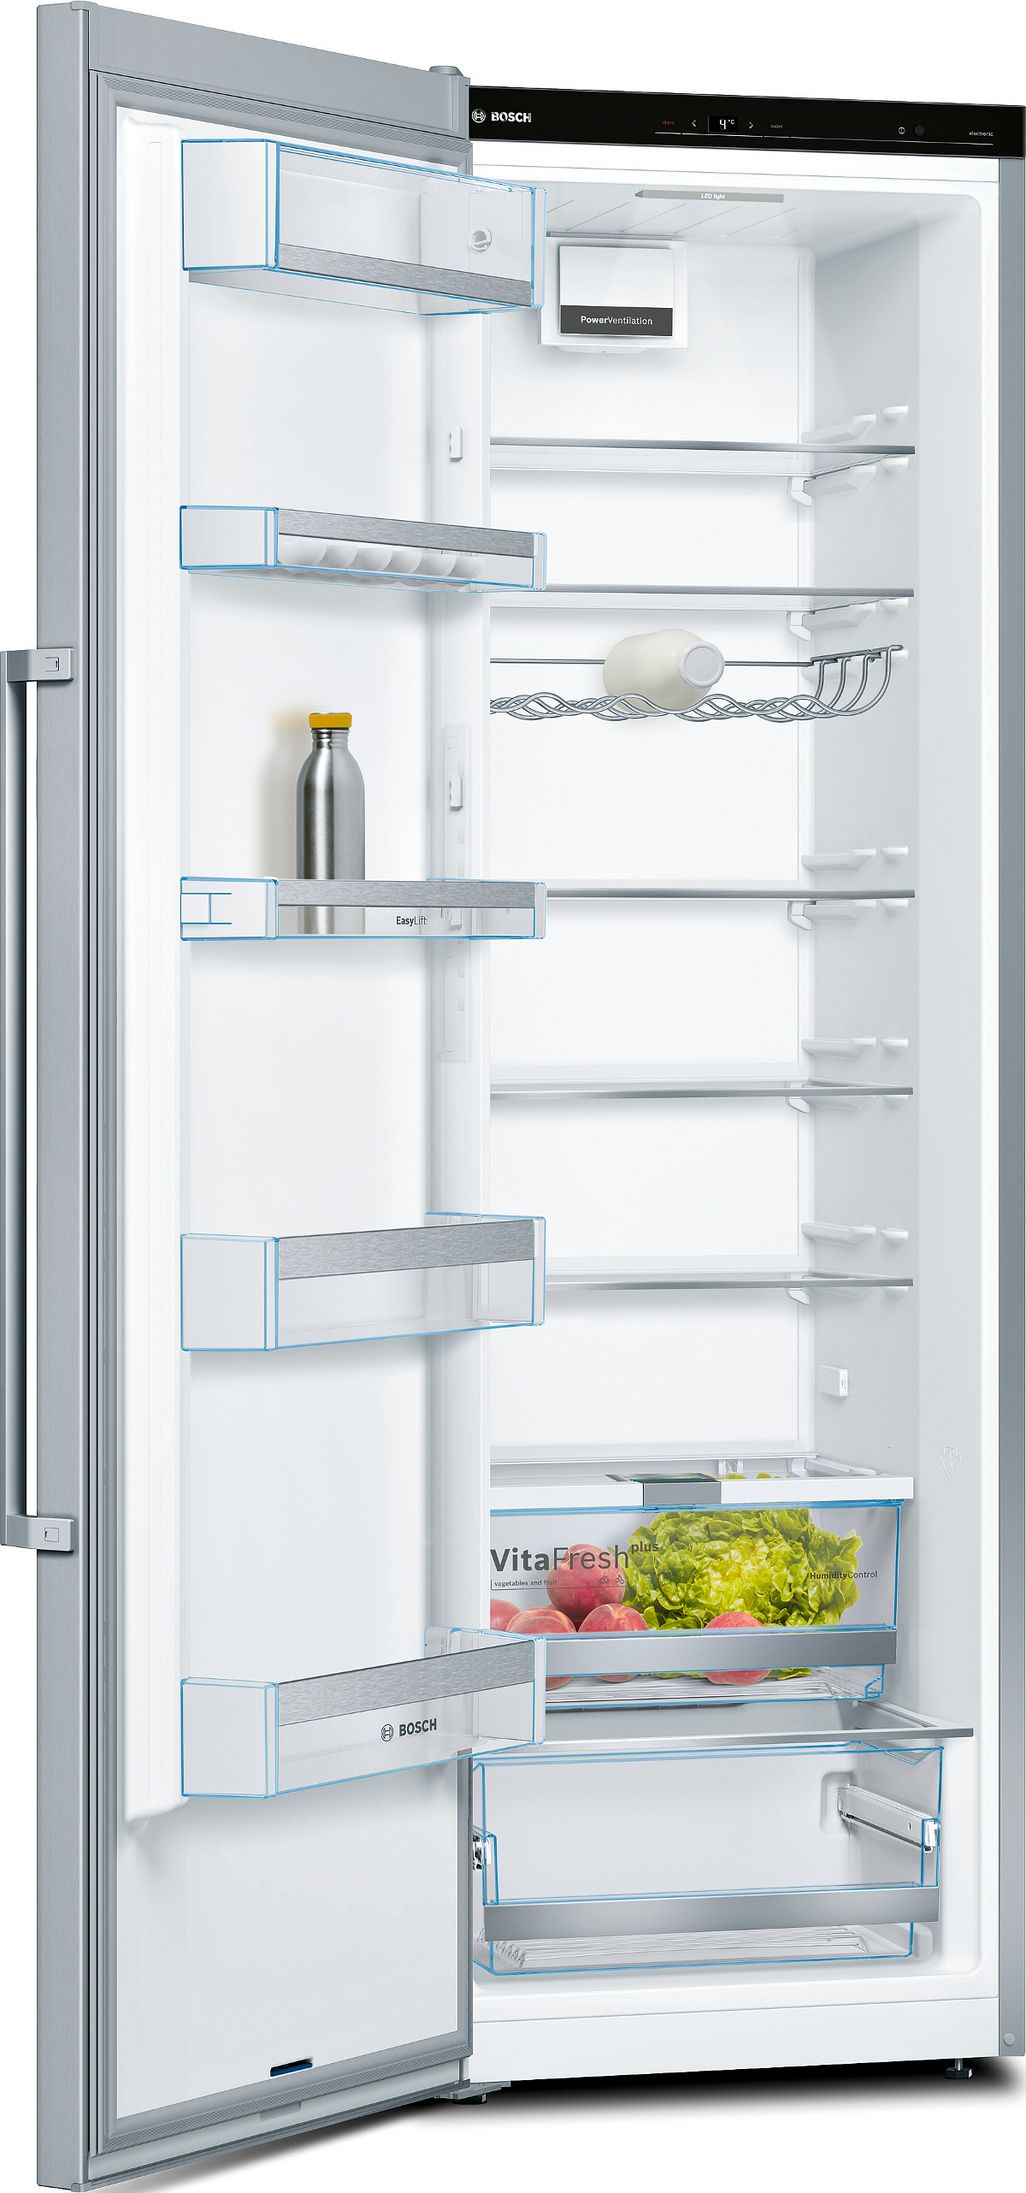 Bosch sorgt mit der VitaFresh-Lade für die optimale Feuchtigkeit, um Obst und Gemüse lange zu lagern.